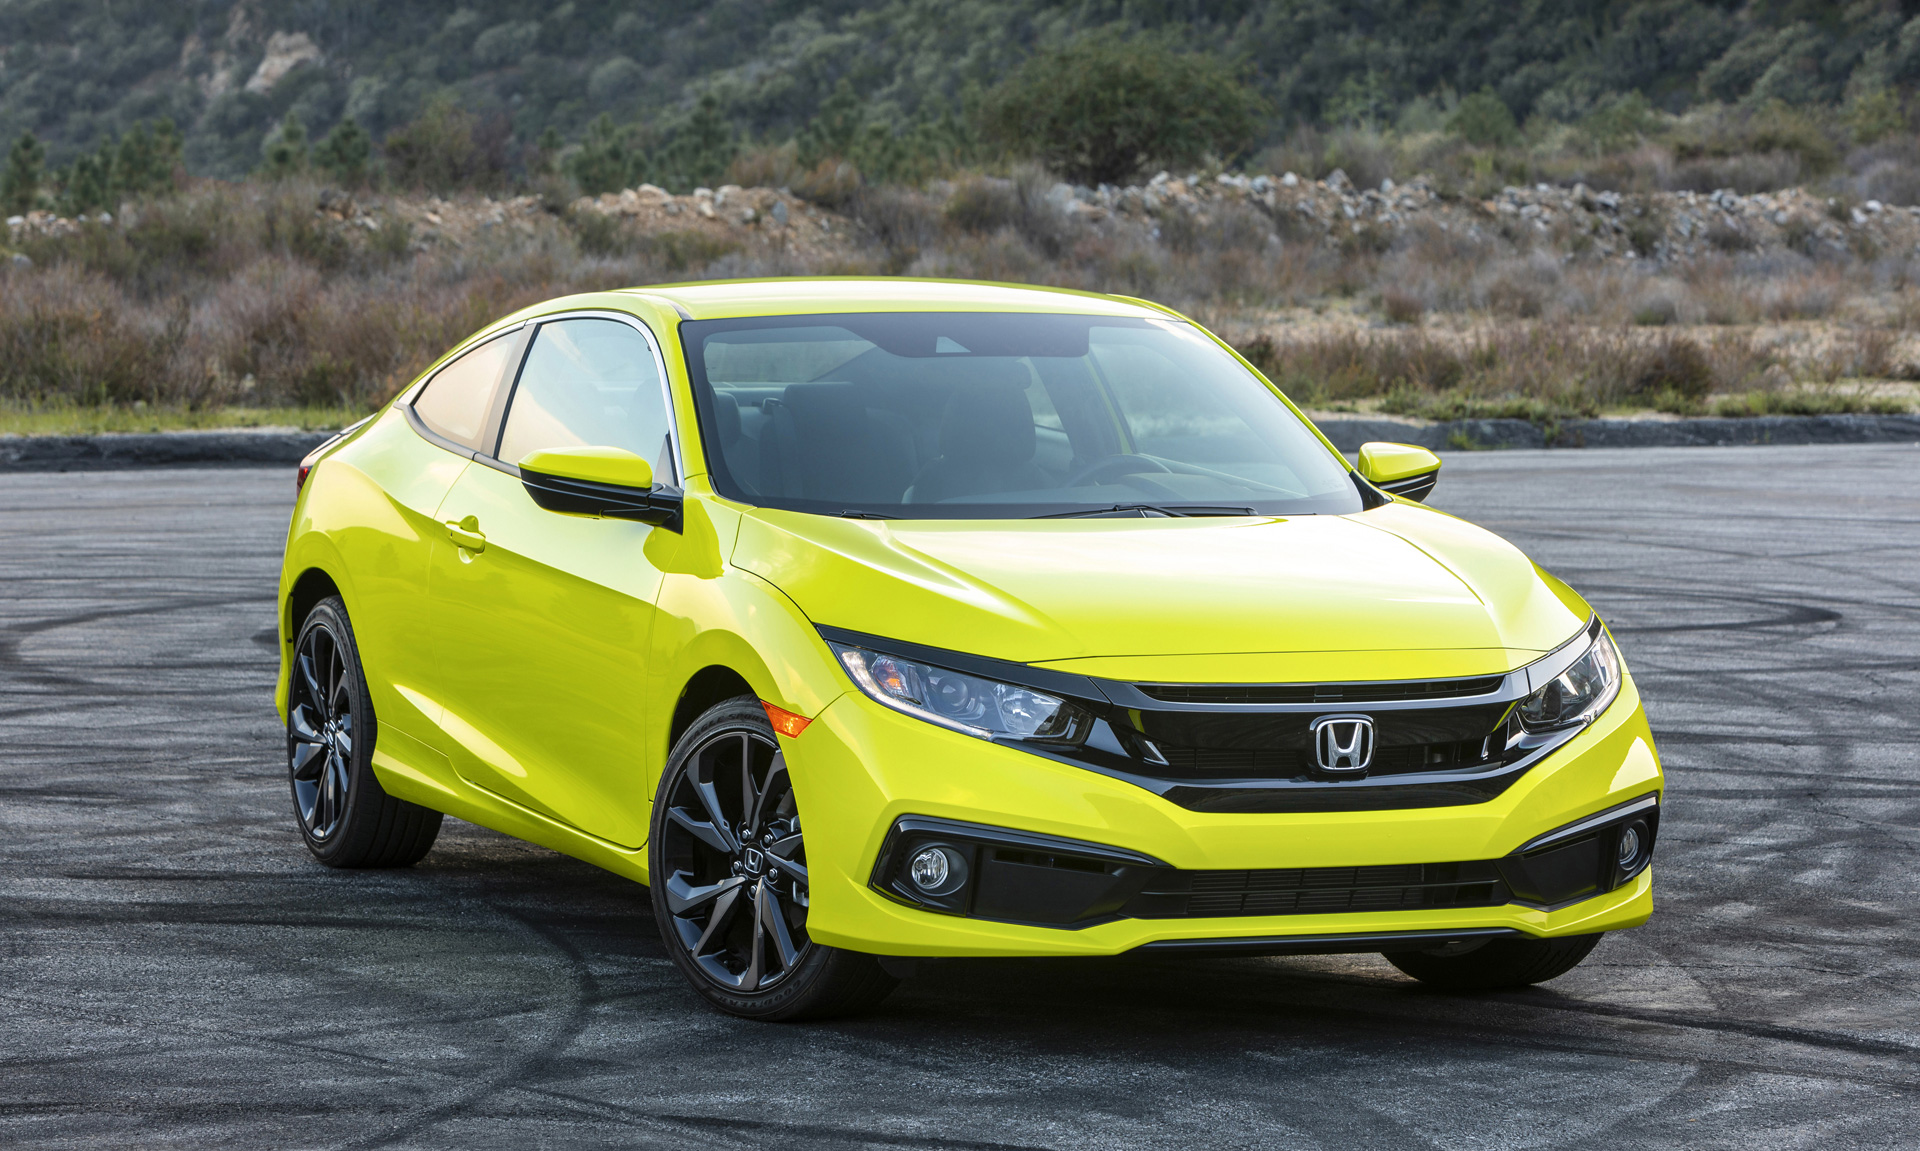 El Honda Civic Sedan 2020 llegan a las tiendas como el auto de